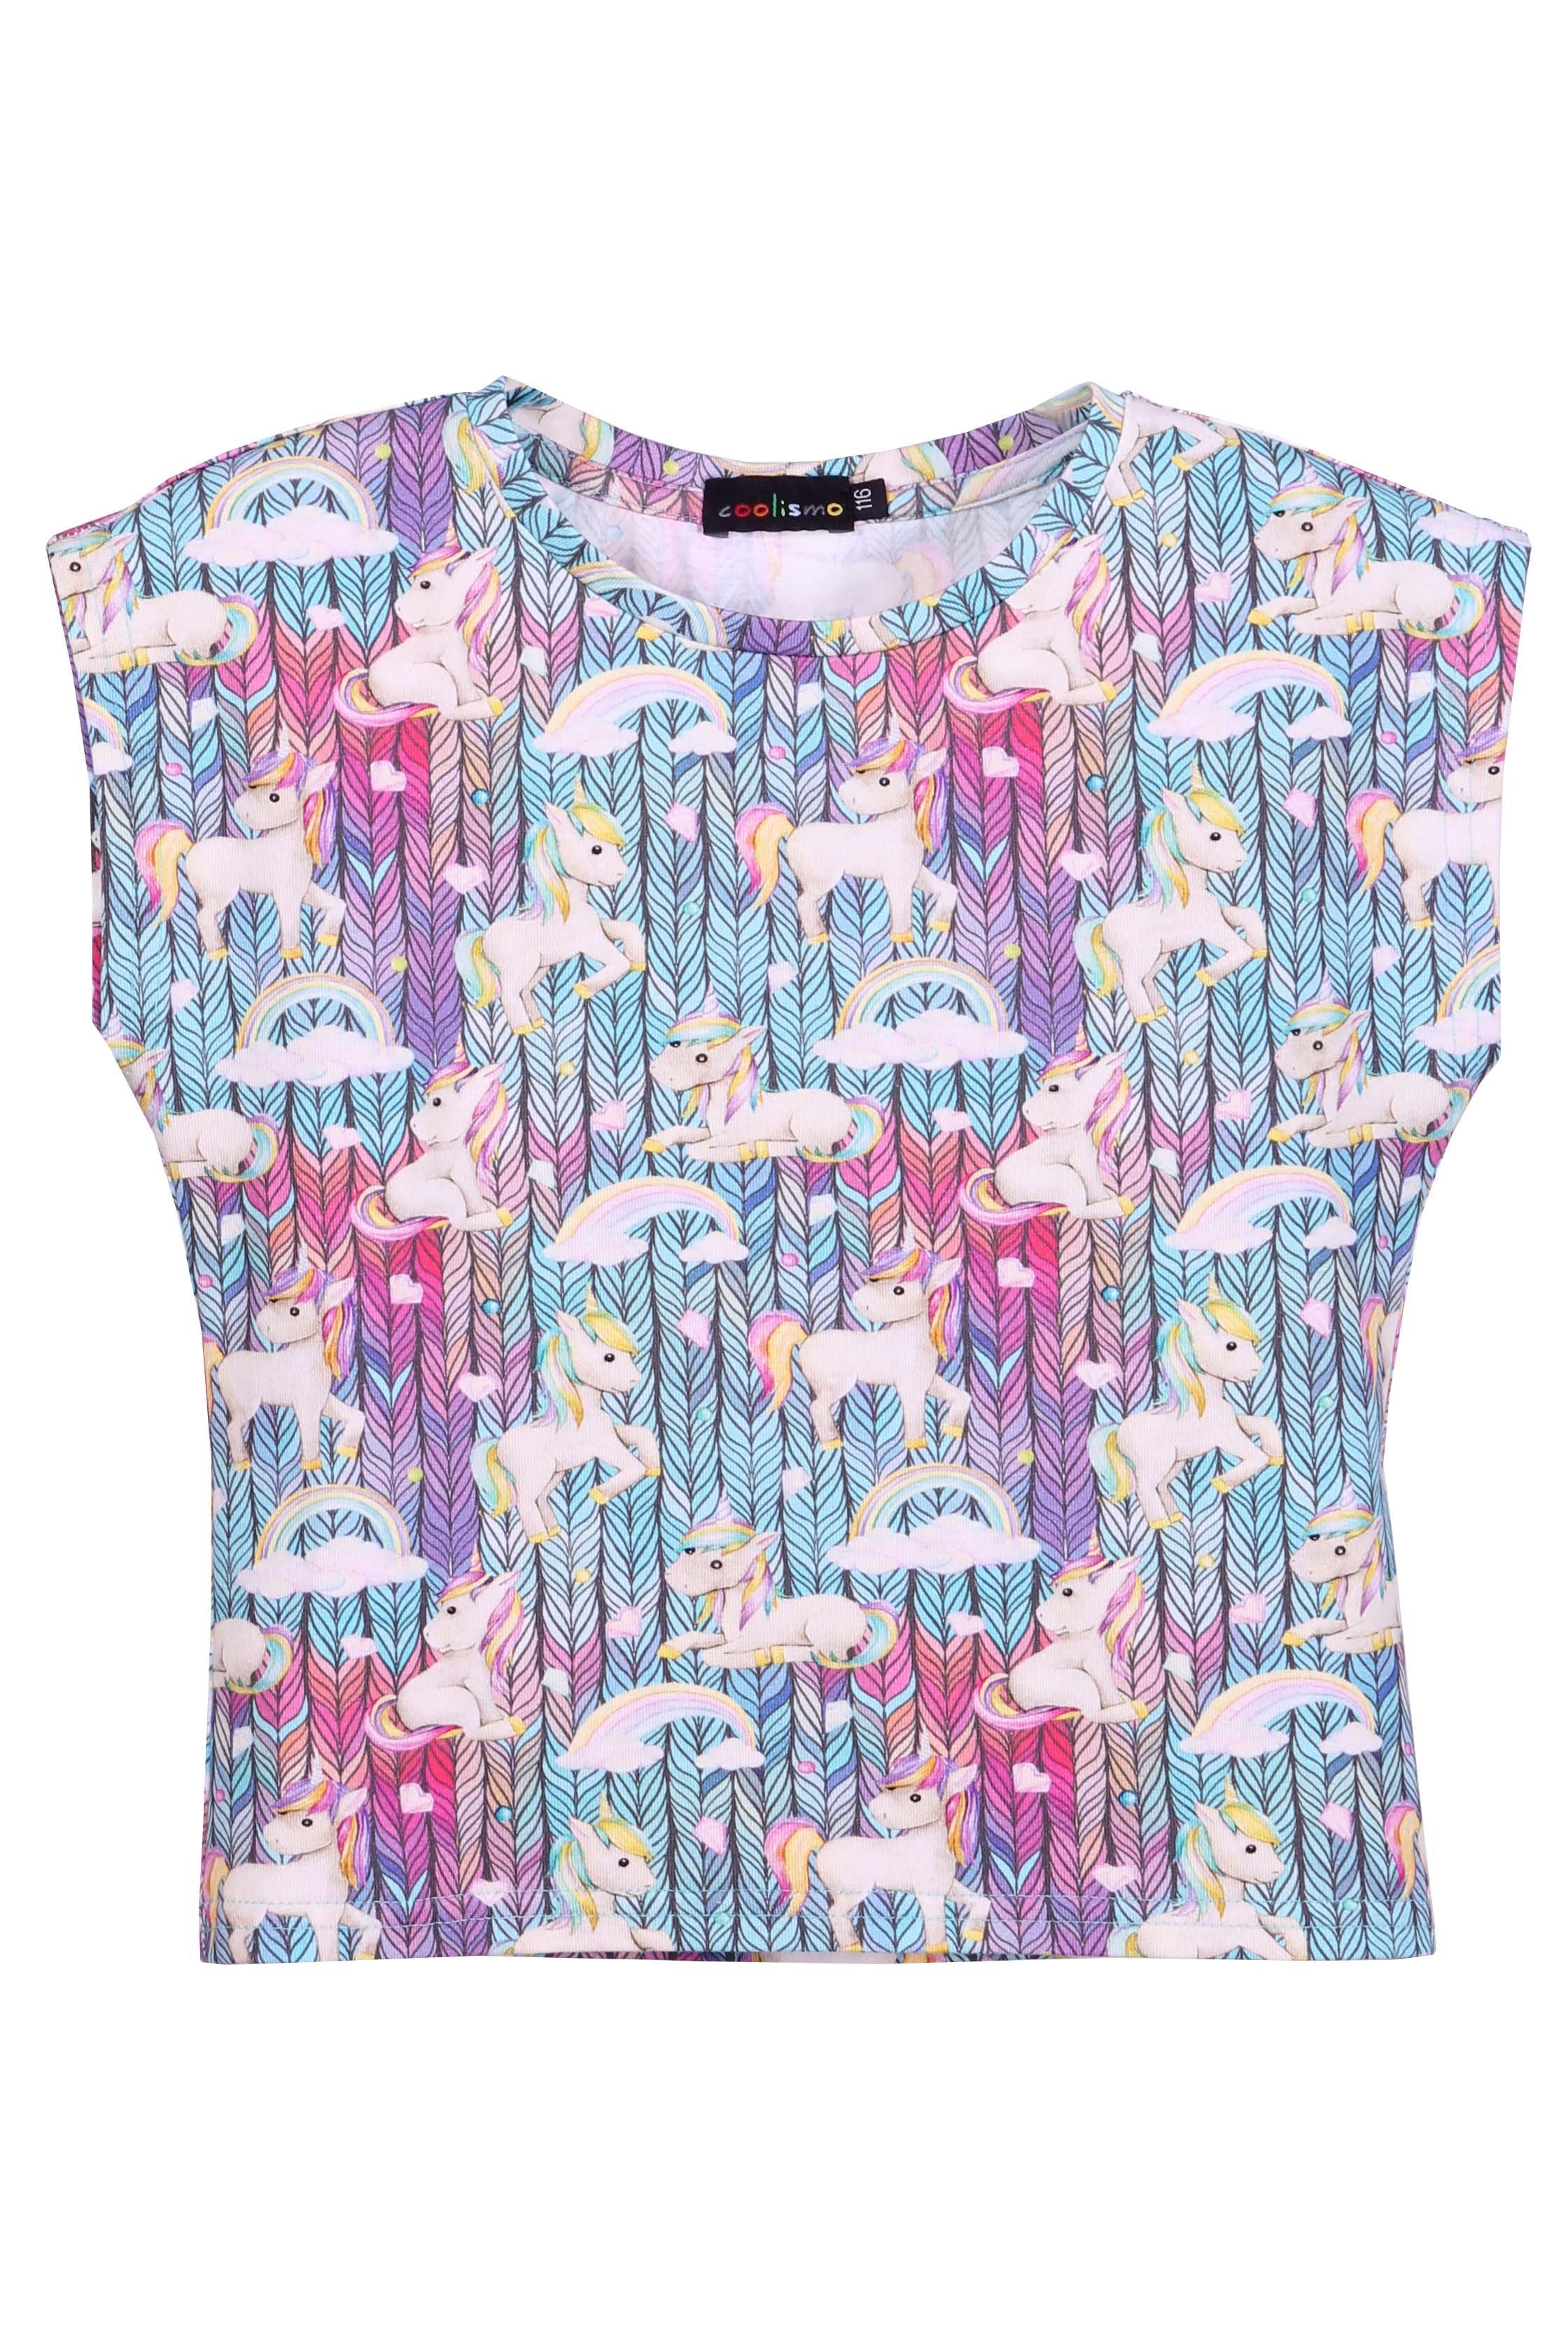 coolismo T-Shirt Mädchen T-Shirt Pferdchen mit Einhorn Rundhalsausschnitt, Alloverprint, Baumwolle